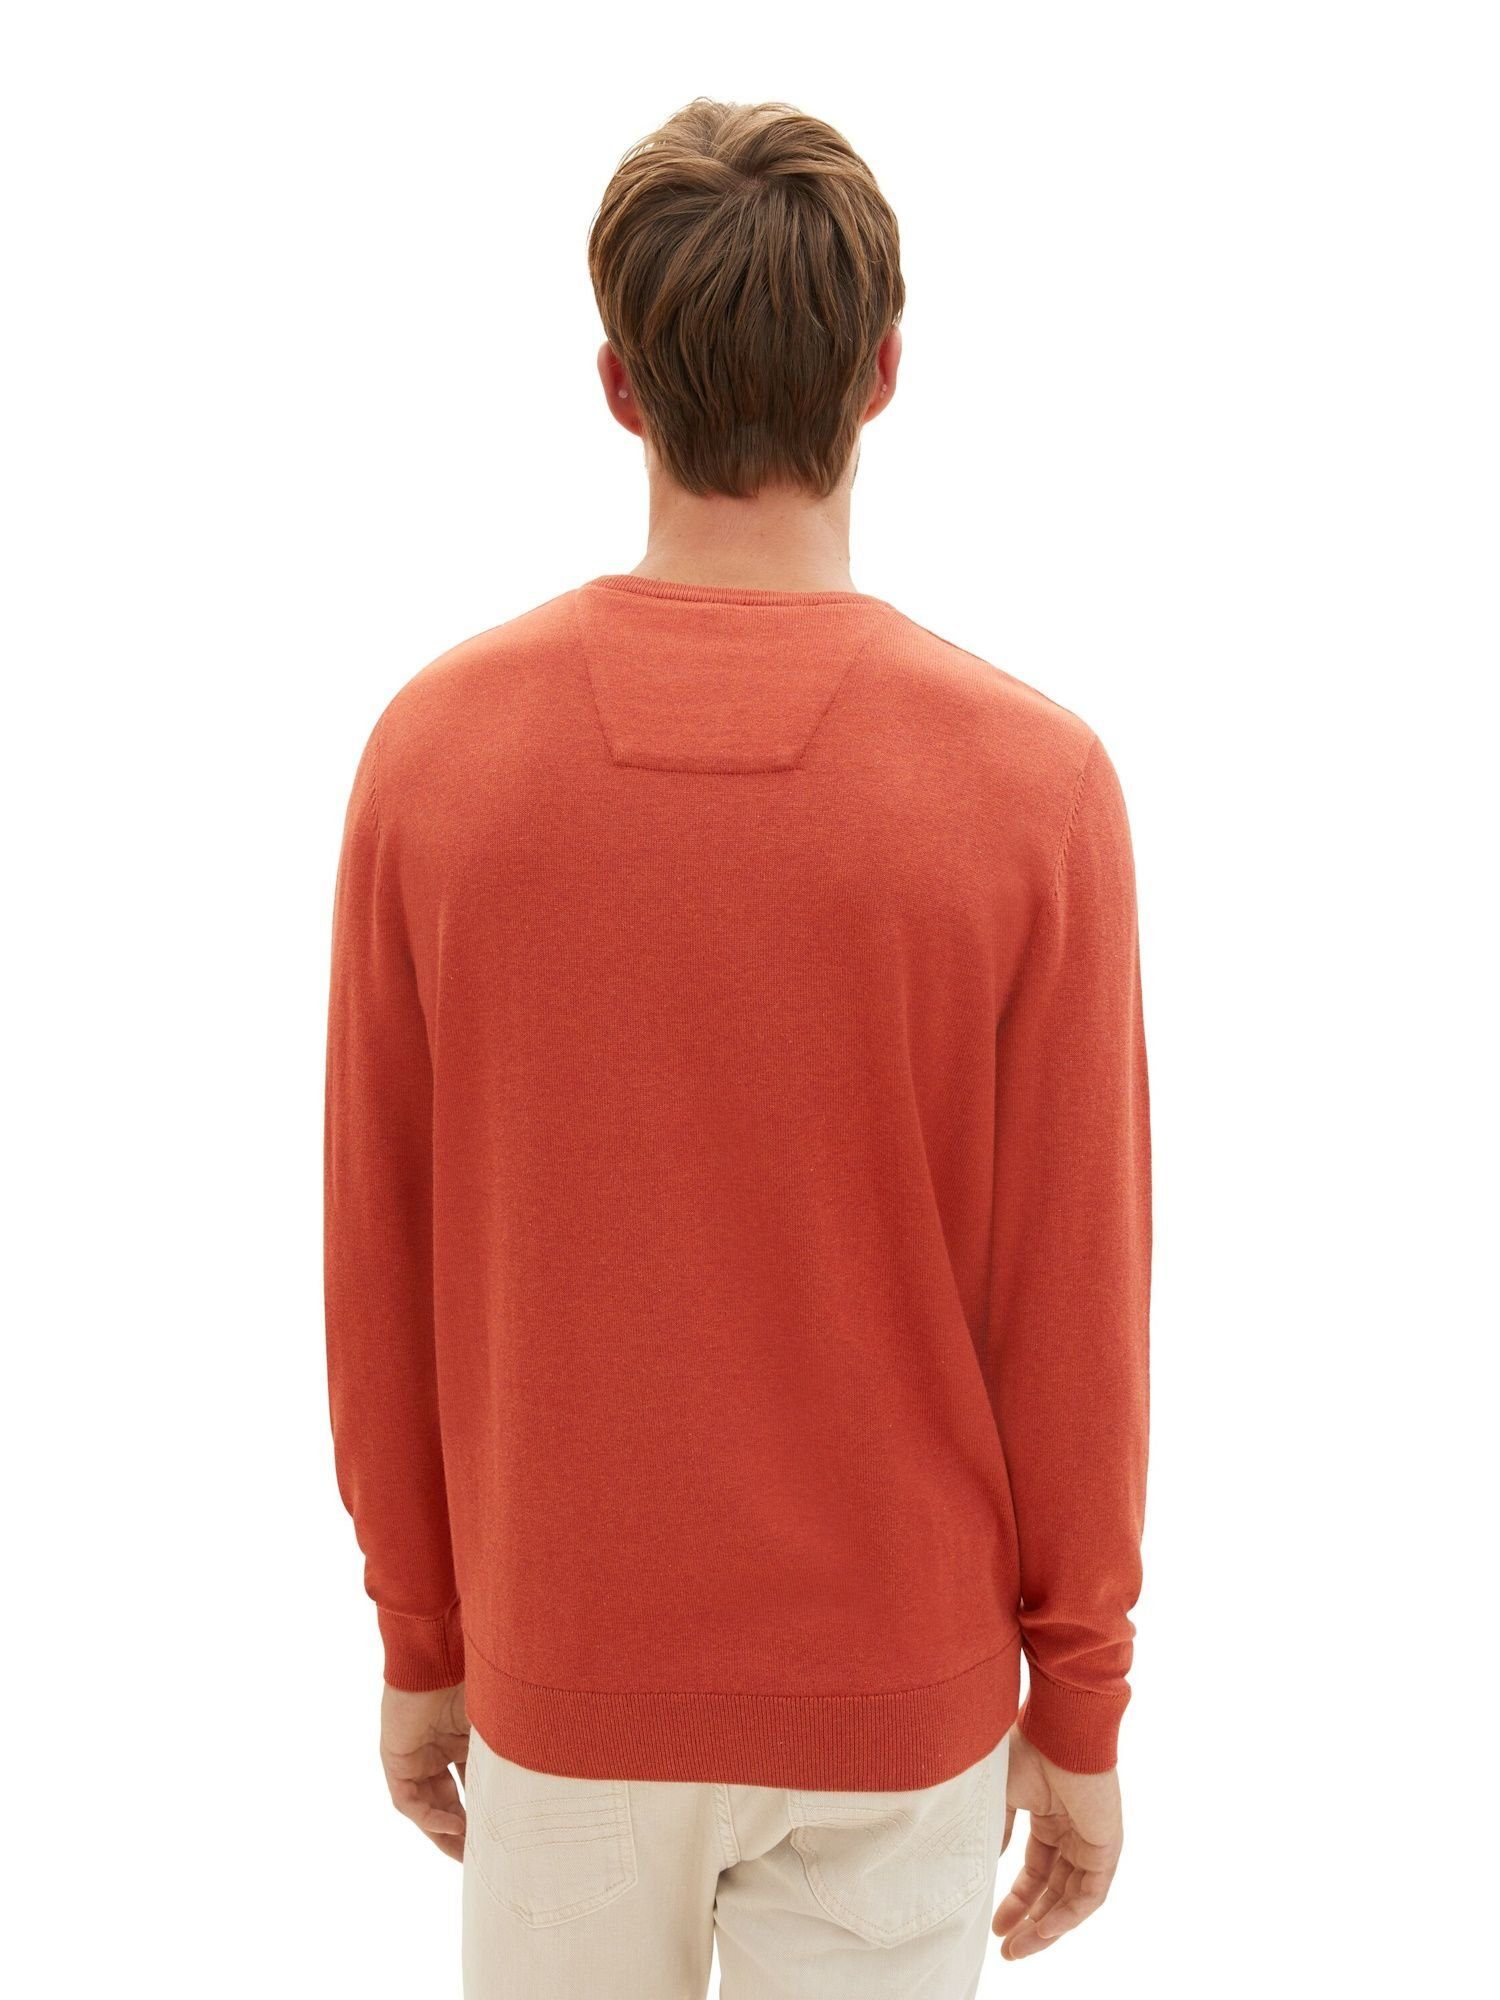 Exklusiver Sonderpreisverkauf TOM TAILOR Sweatshirt Sweatshirt Pullover rot meliert Rippbündchen (1-tlg) mit